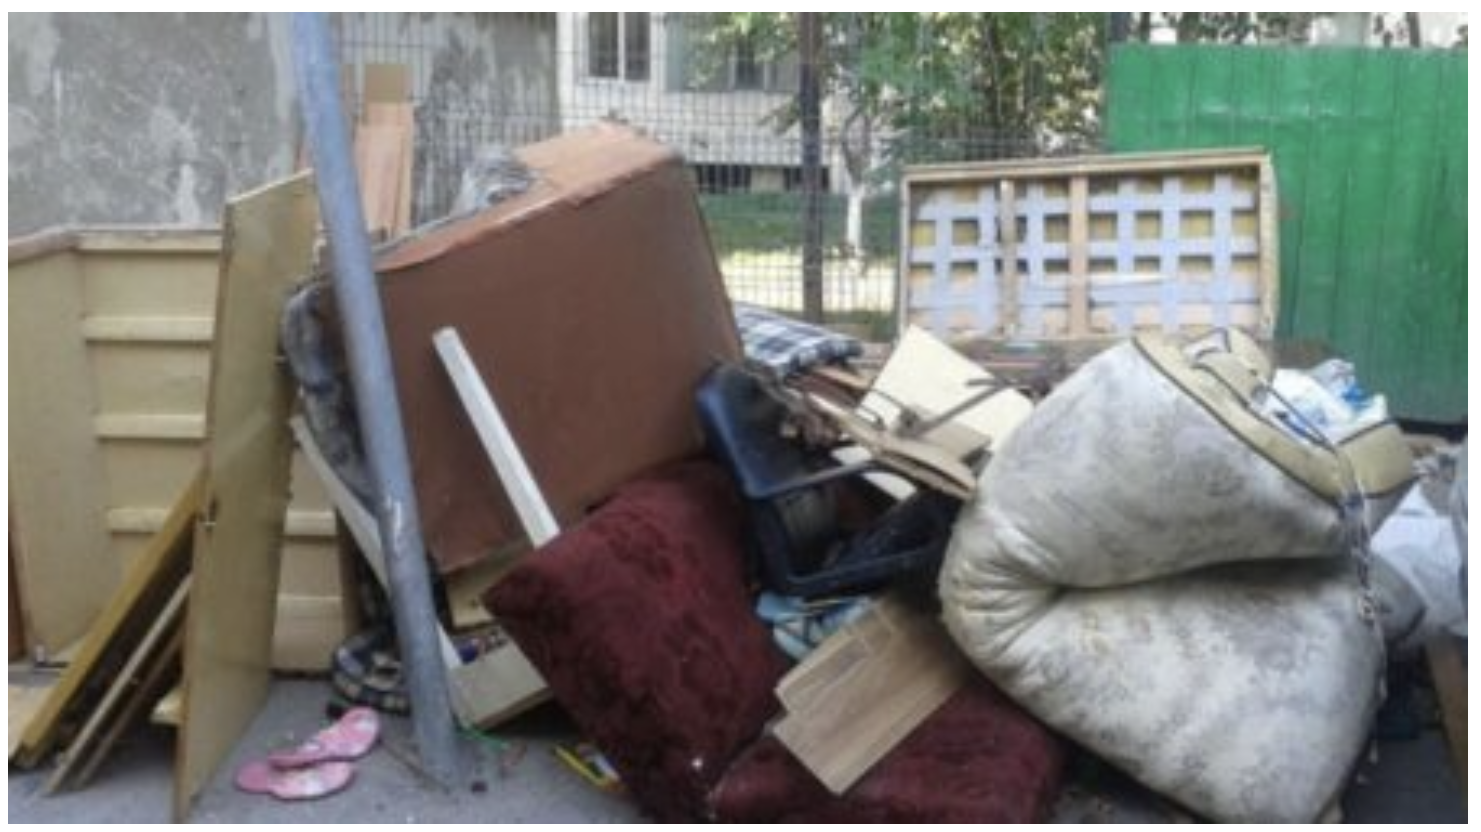 Campanie de colectare a deșeurilor voluminoase în Cluj-Napoca. Unde poți duce gratis mobila veche?